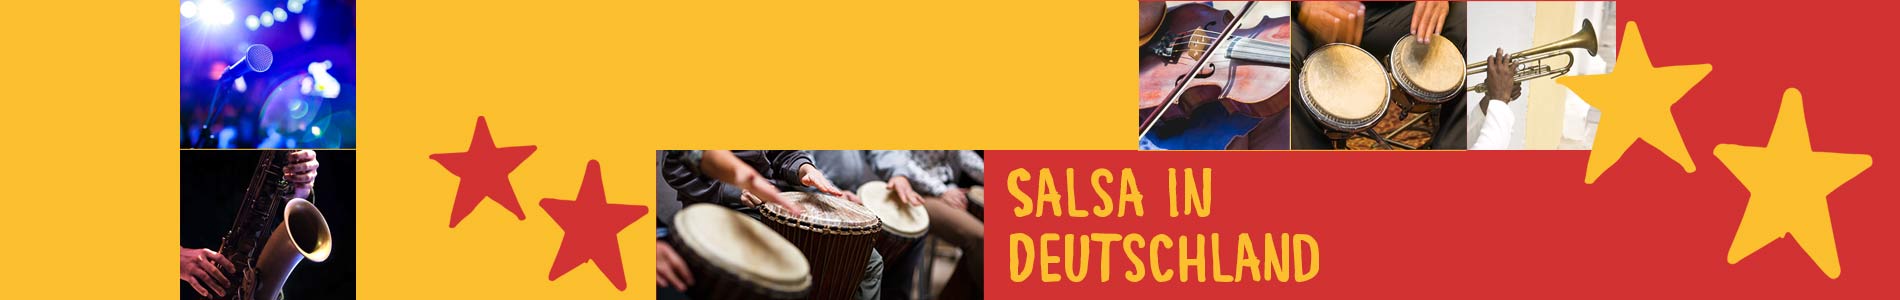 Salsa in Breitnau – Salsa lernen und tanzen, Tanzkurse, Partys, Veranstaltungen